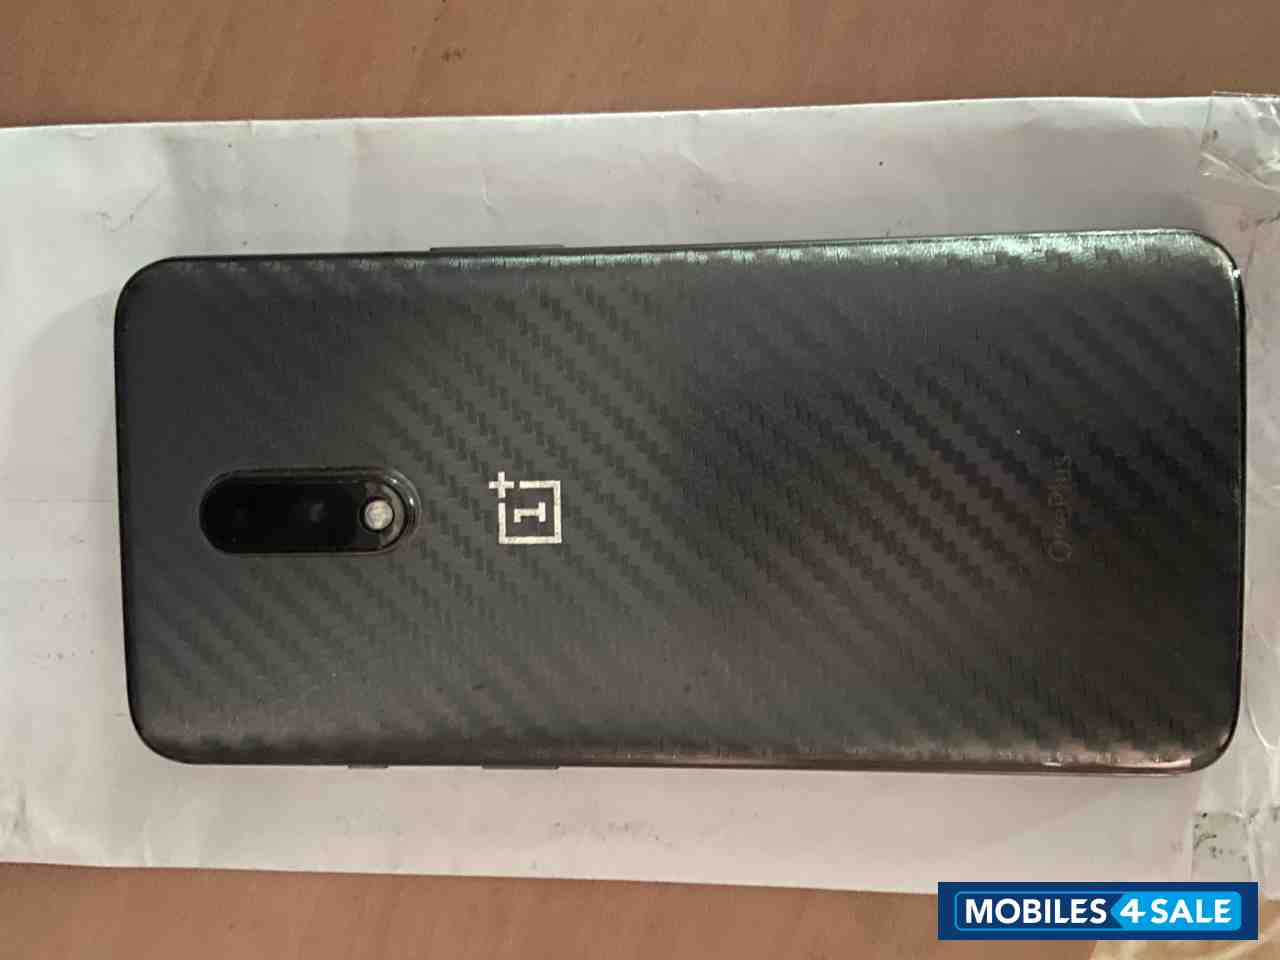 Grey OnePlus  One plus 7 6 gb ram  128gb storage